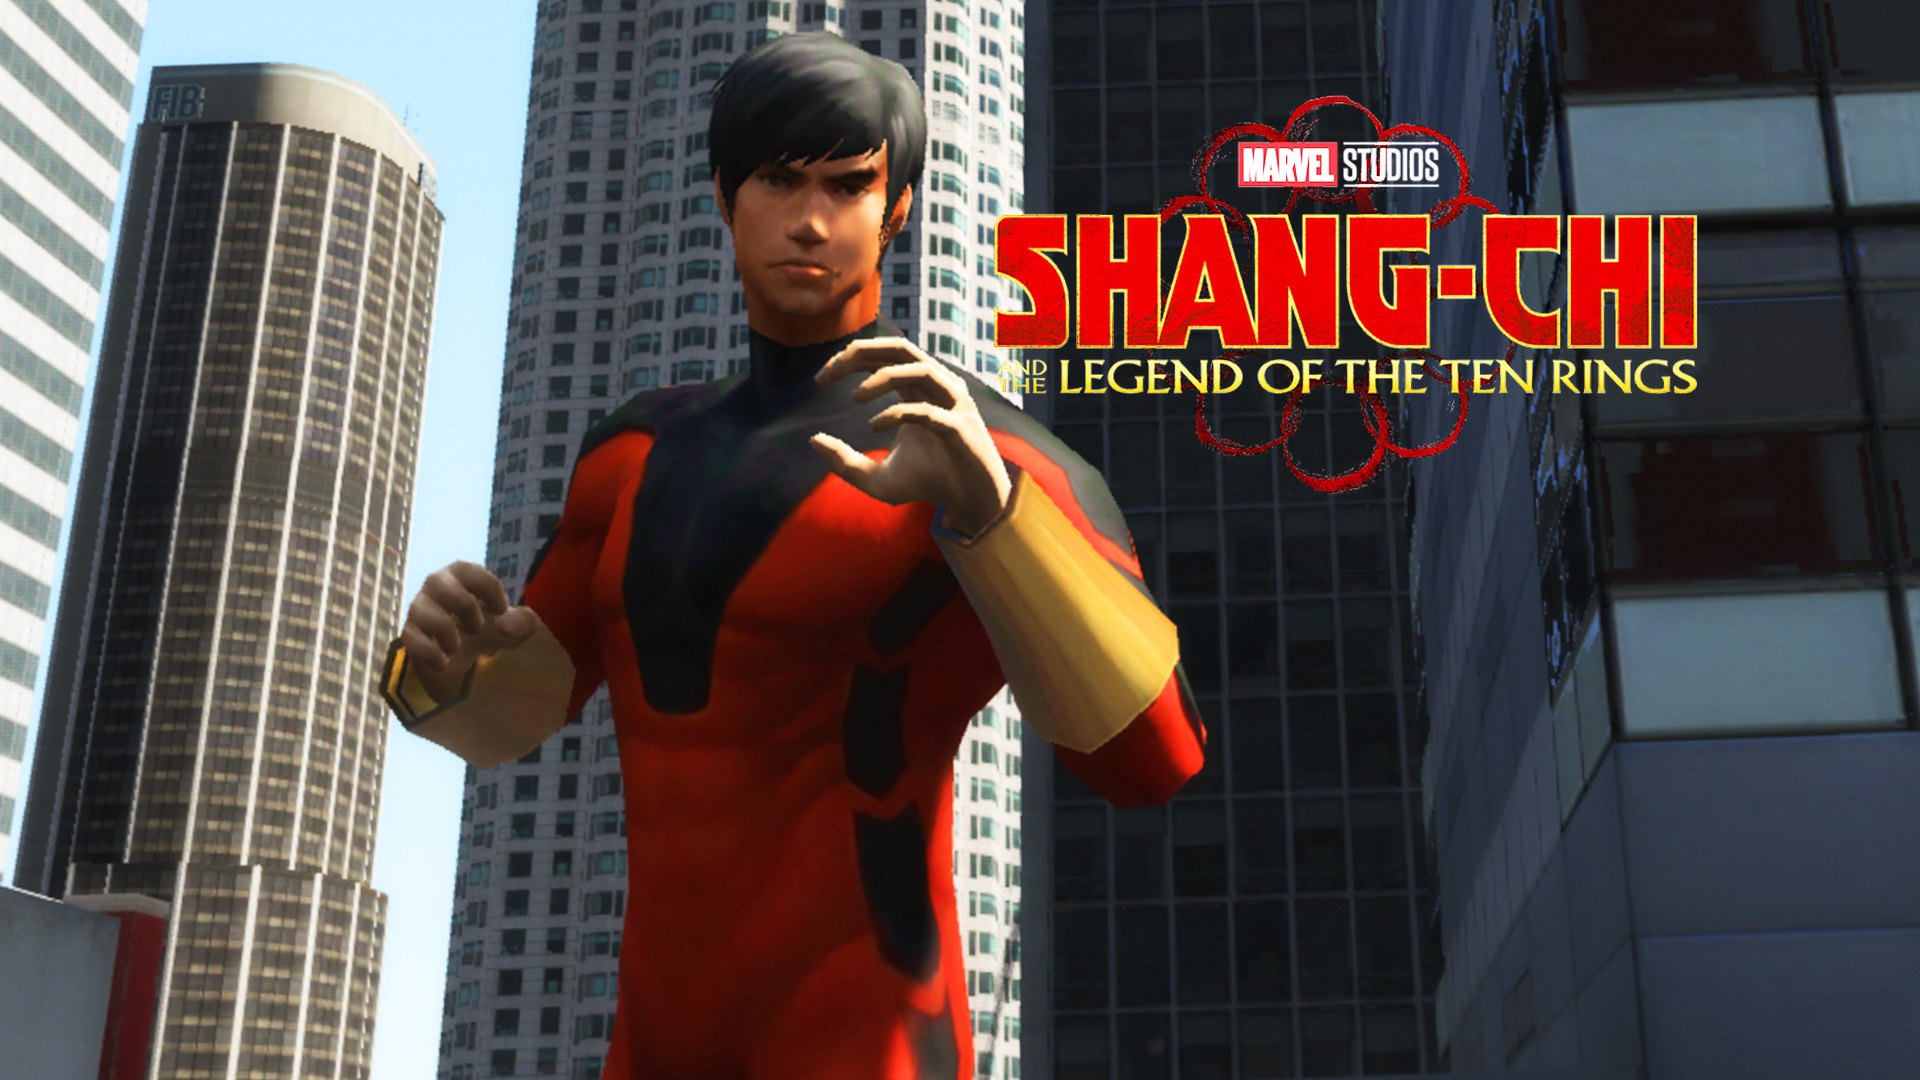 Shang chi marvel